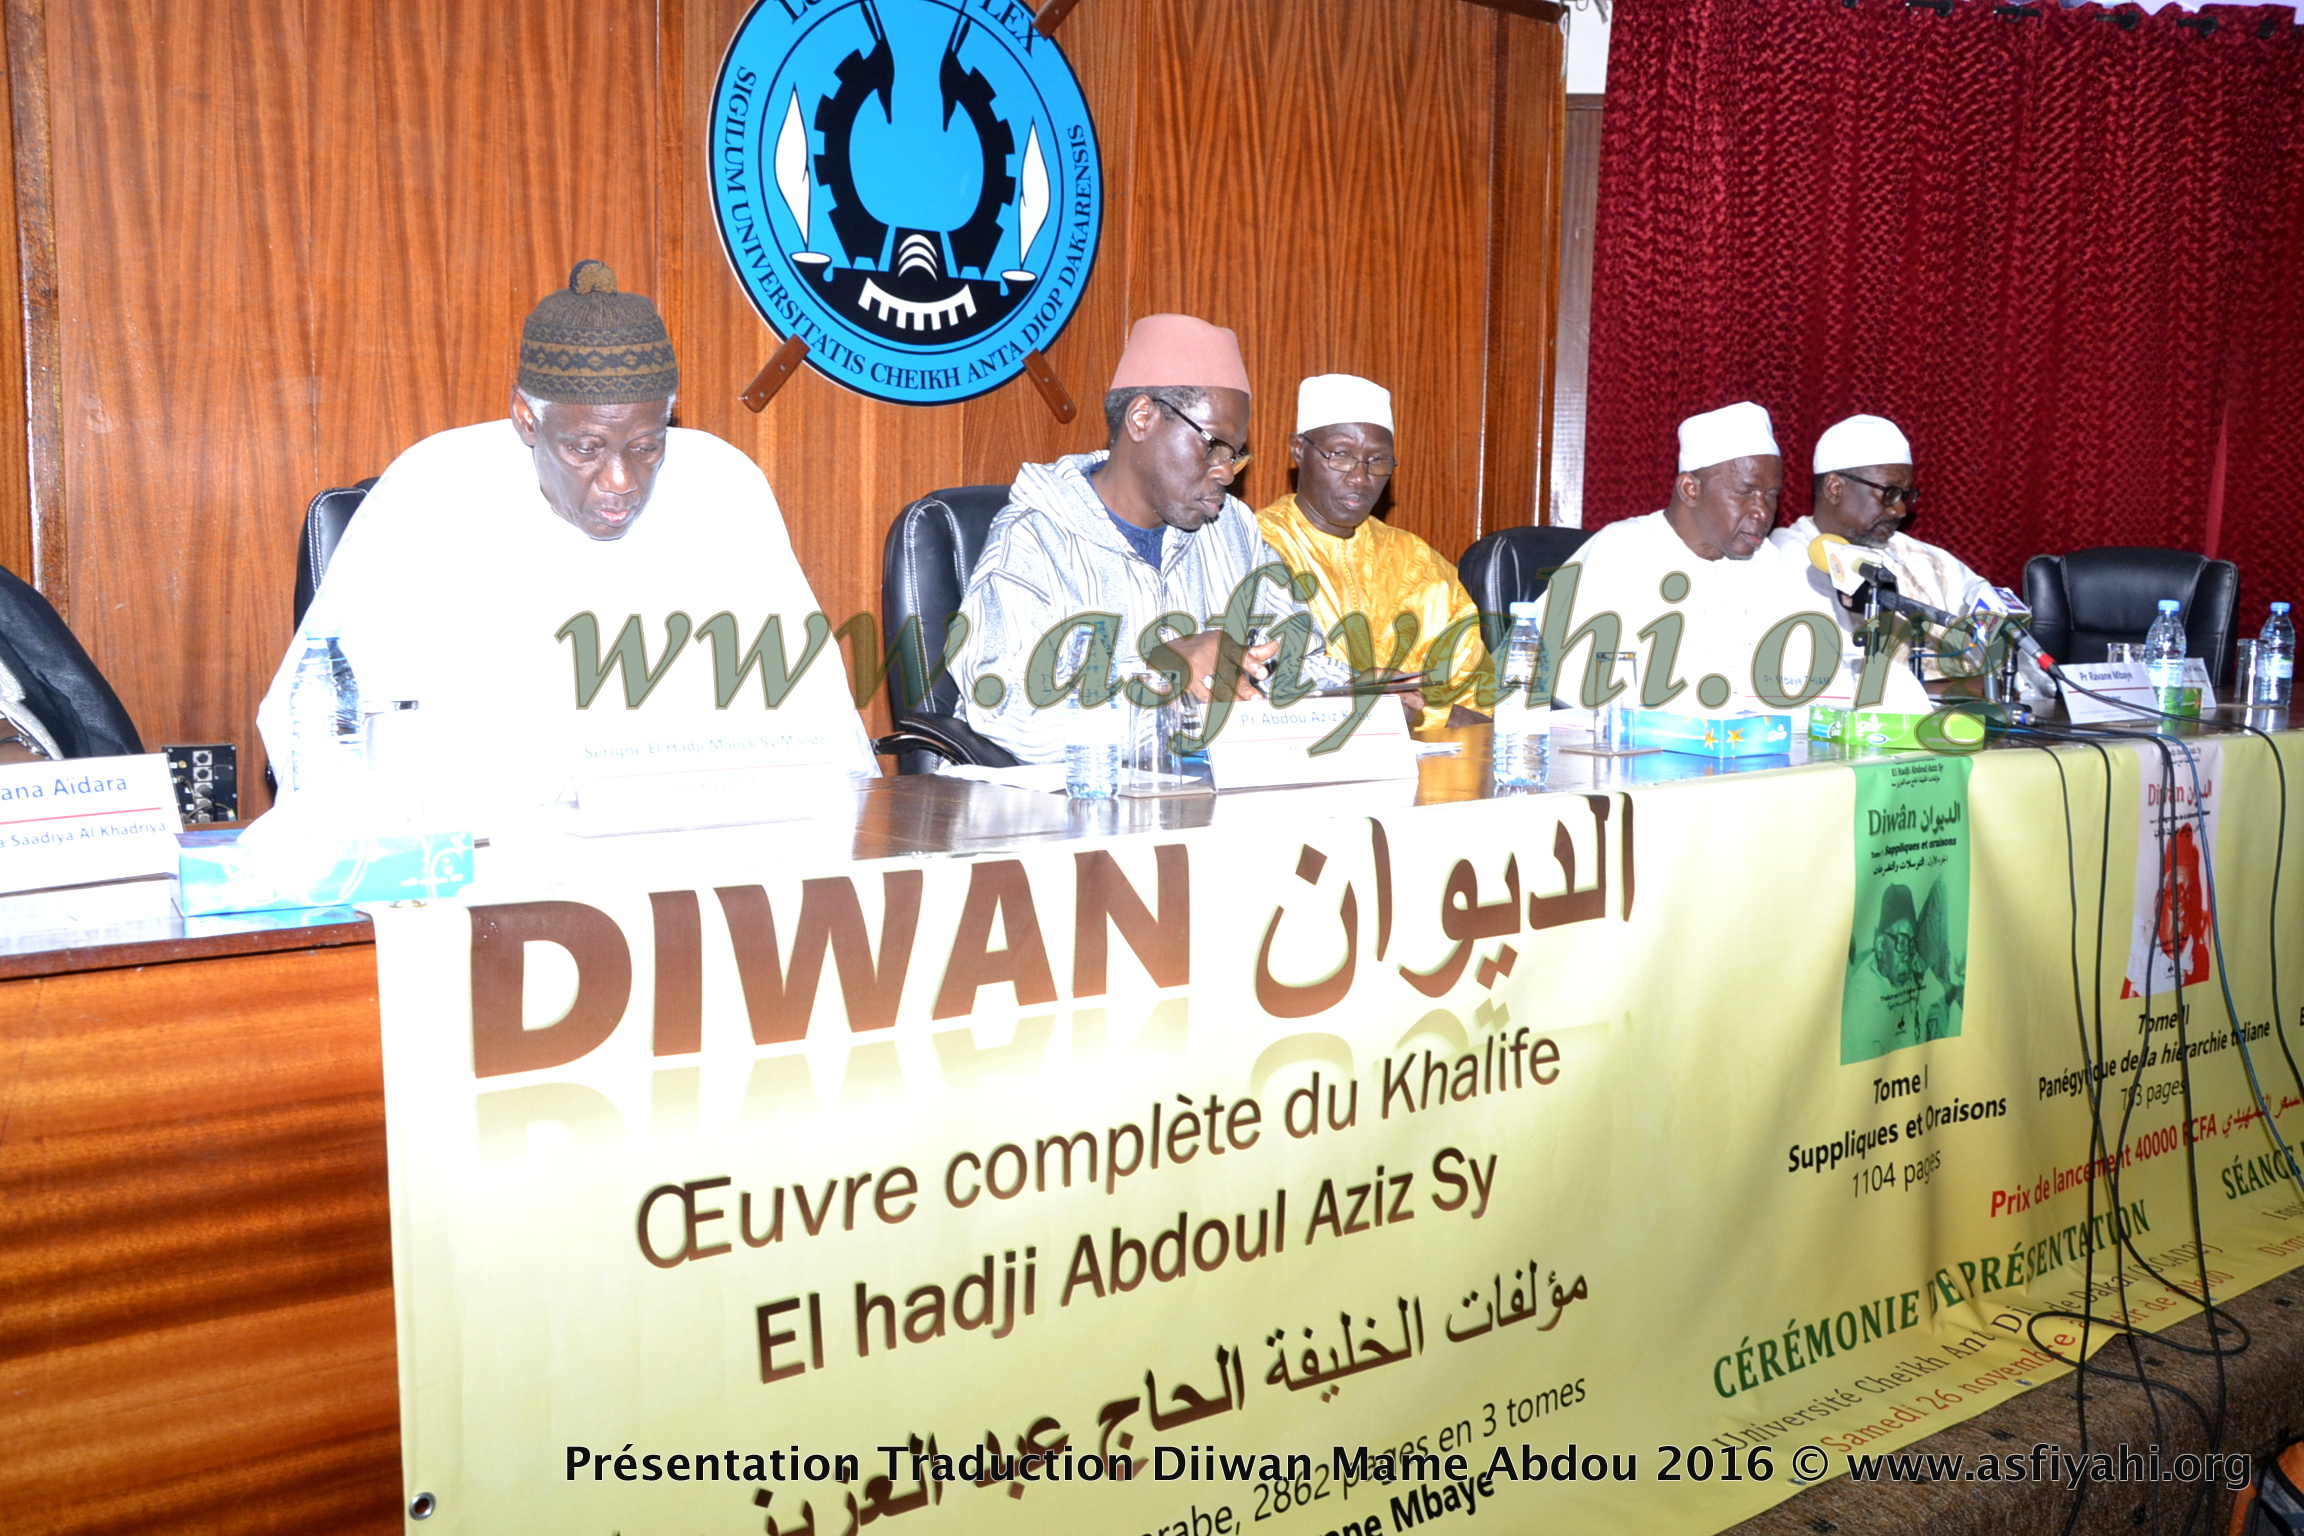 PHOTOS - les Images de la Ceremonie de Presentation du Diiwaan d'El Hadj Abdoul Aziz SY Dabakh (rta), traduit en français par le Pr Rawane Mbaye